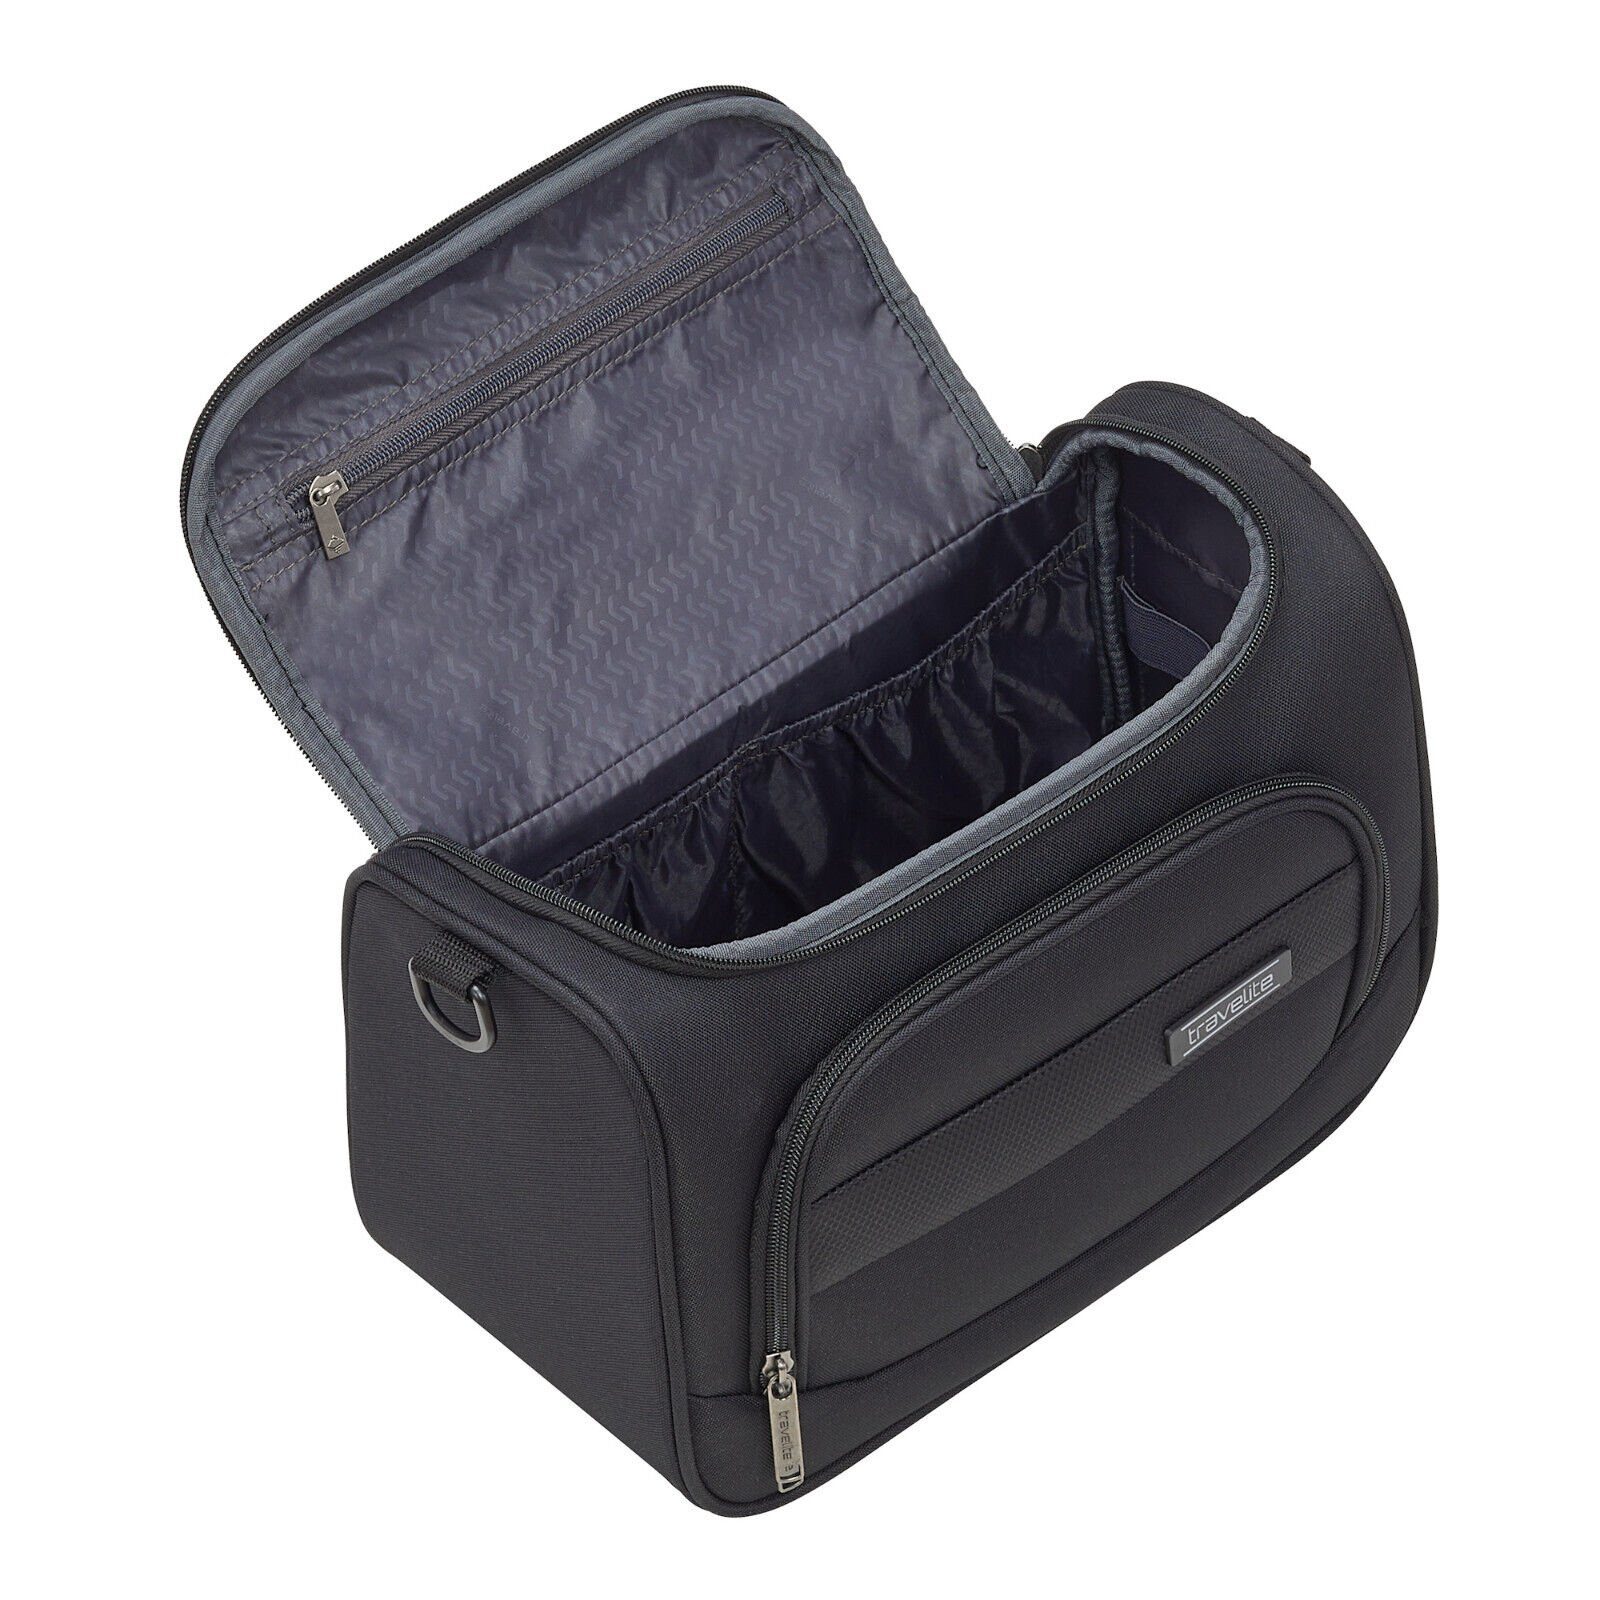 travelite Beautycase schwarz aufsteckbar, Chios Handgepäck, Kulturtasche Koffer einen Schultergurt, auf mit